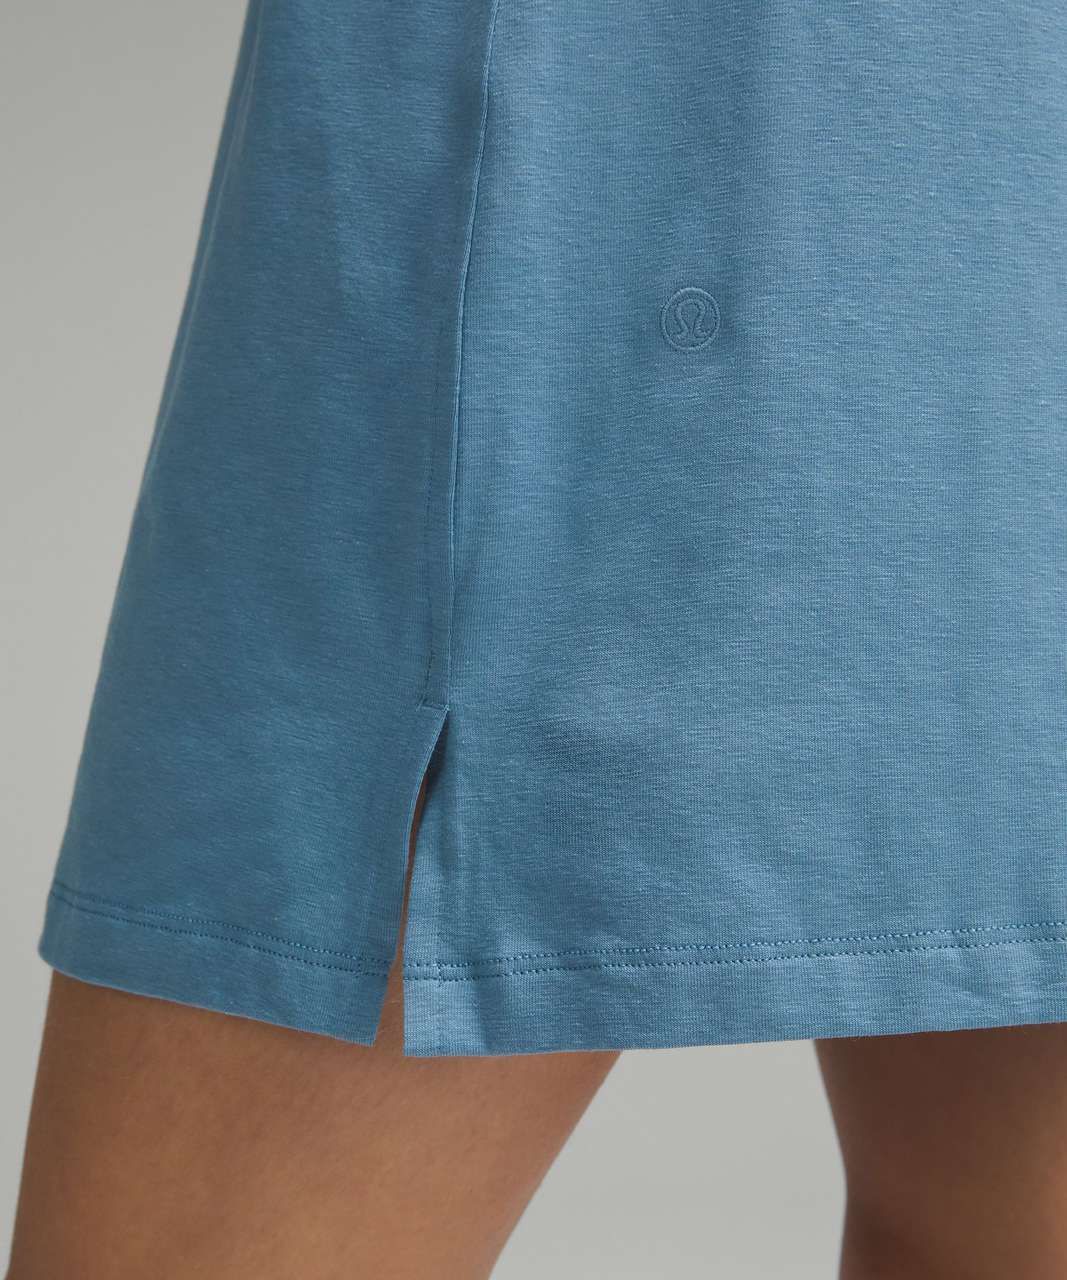 Lululemon Classic-Fit Cotton-Blend T-Shirt Dress - Utility Blue